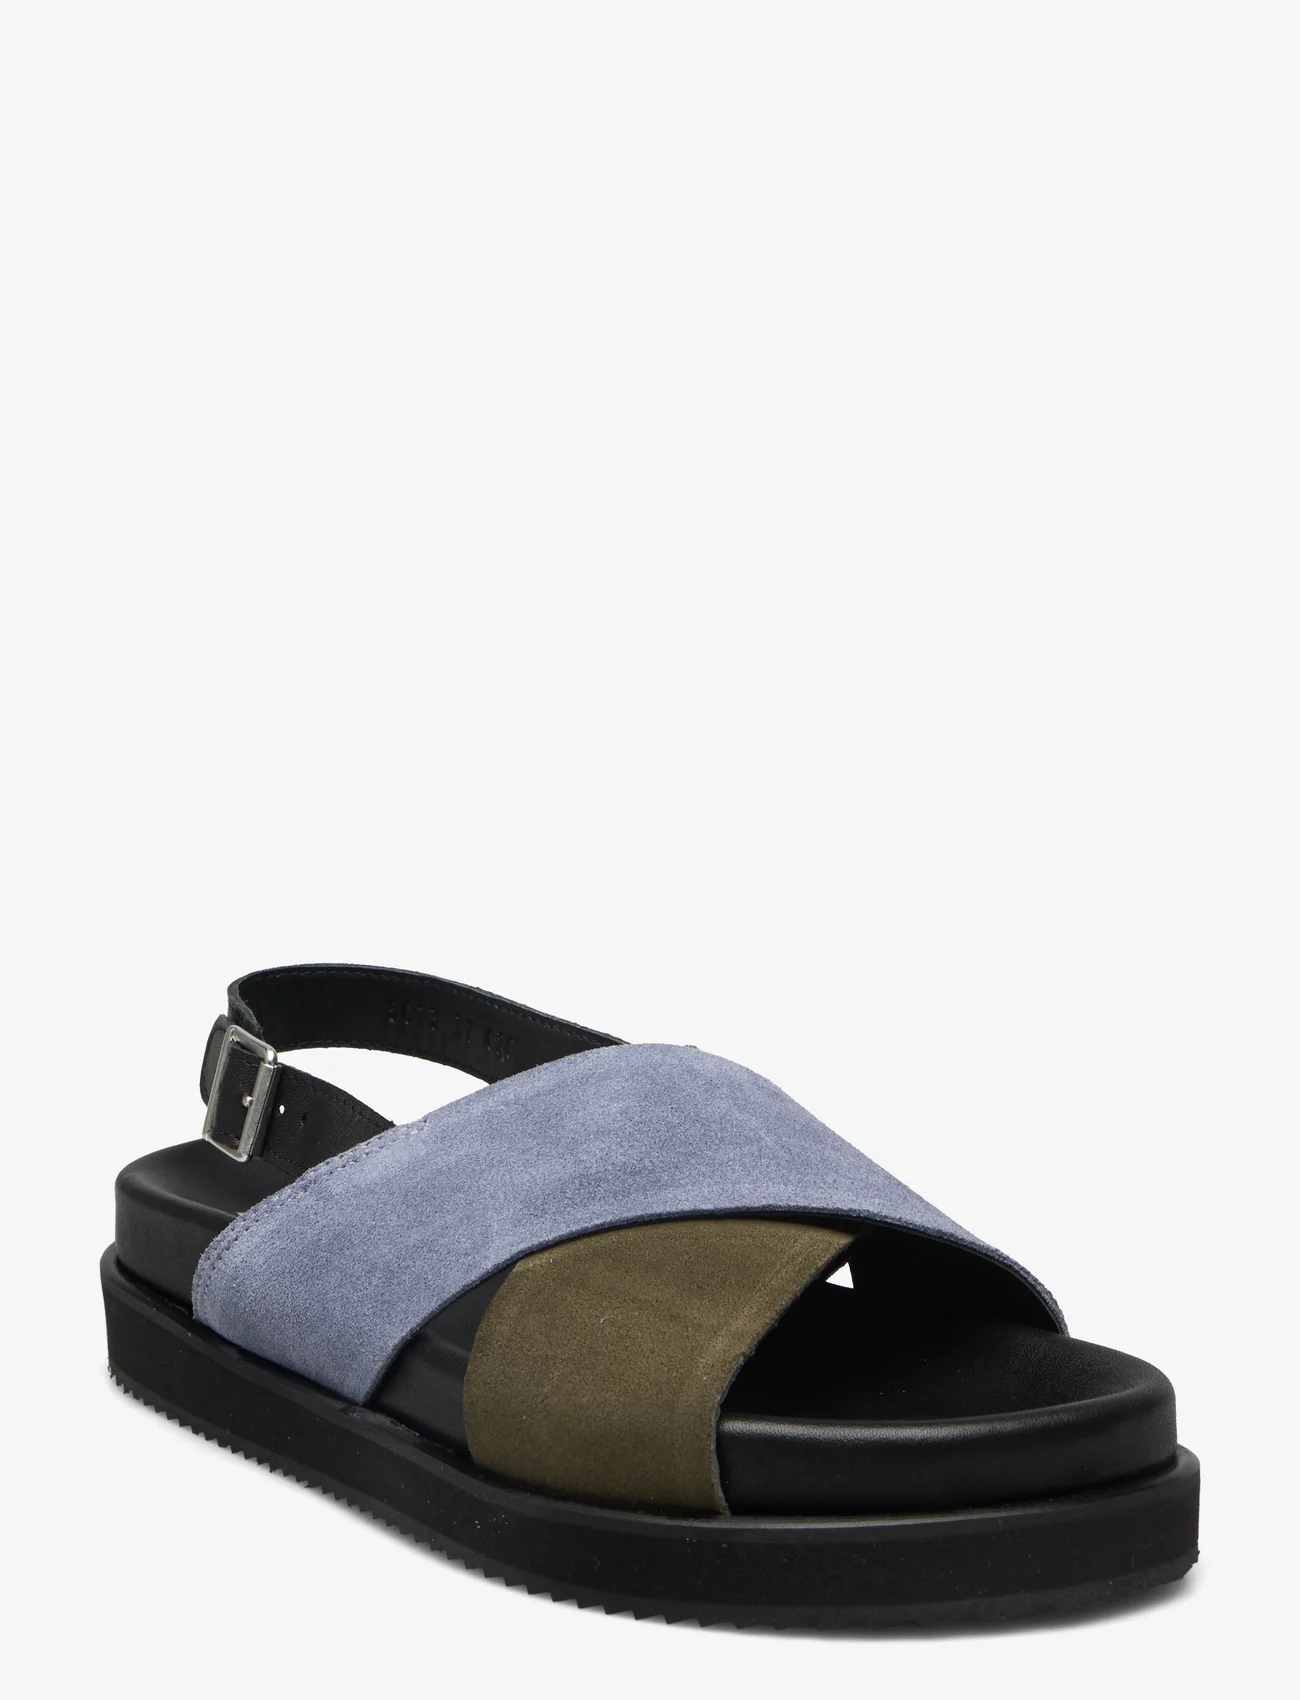 ANGULUS - Sandals - flat - open toe - op - flade sandaler - 1604/2244/2242 black/green/lig - 0